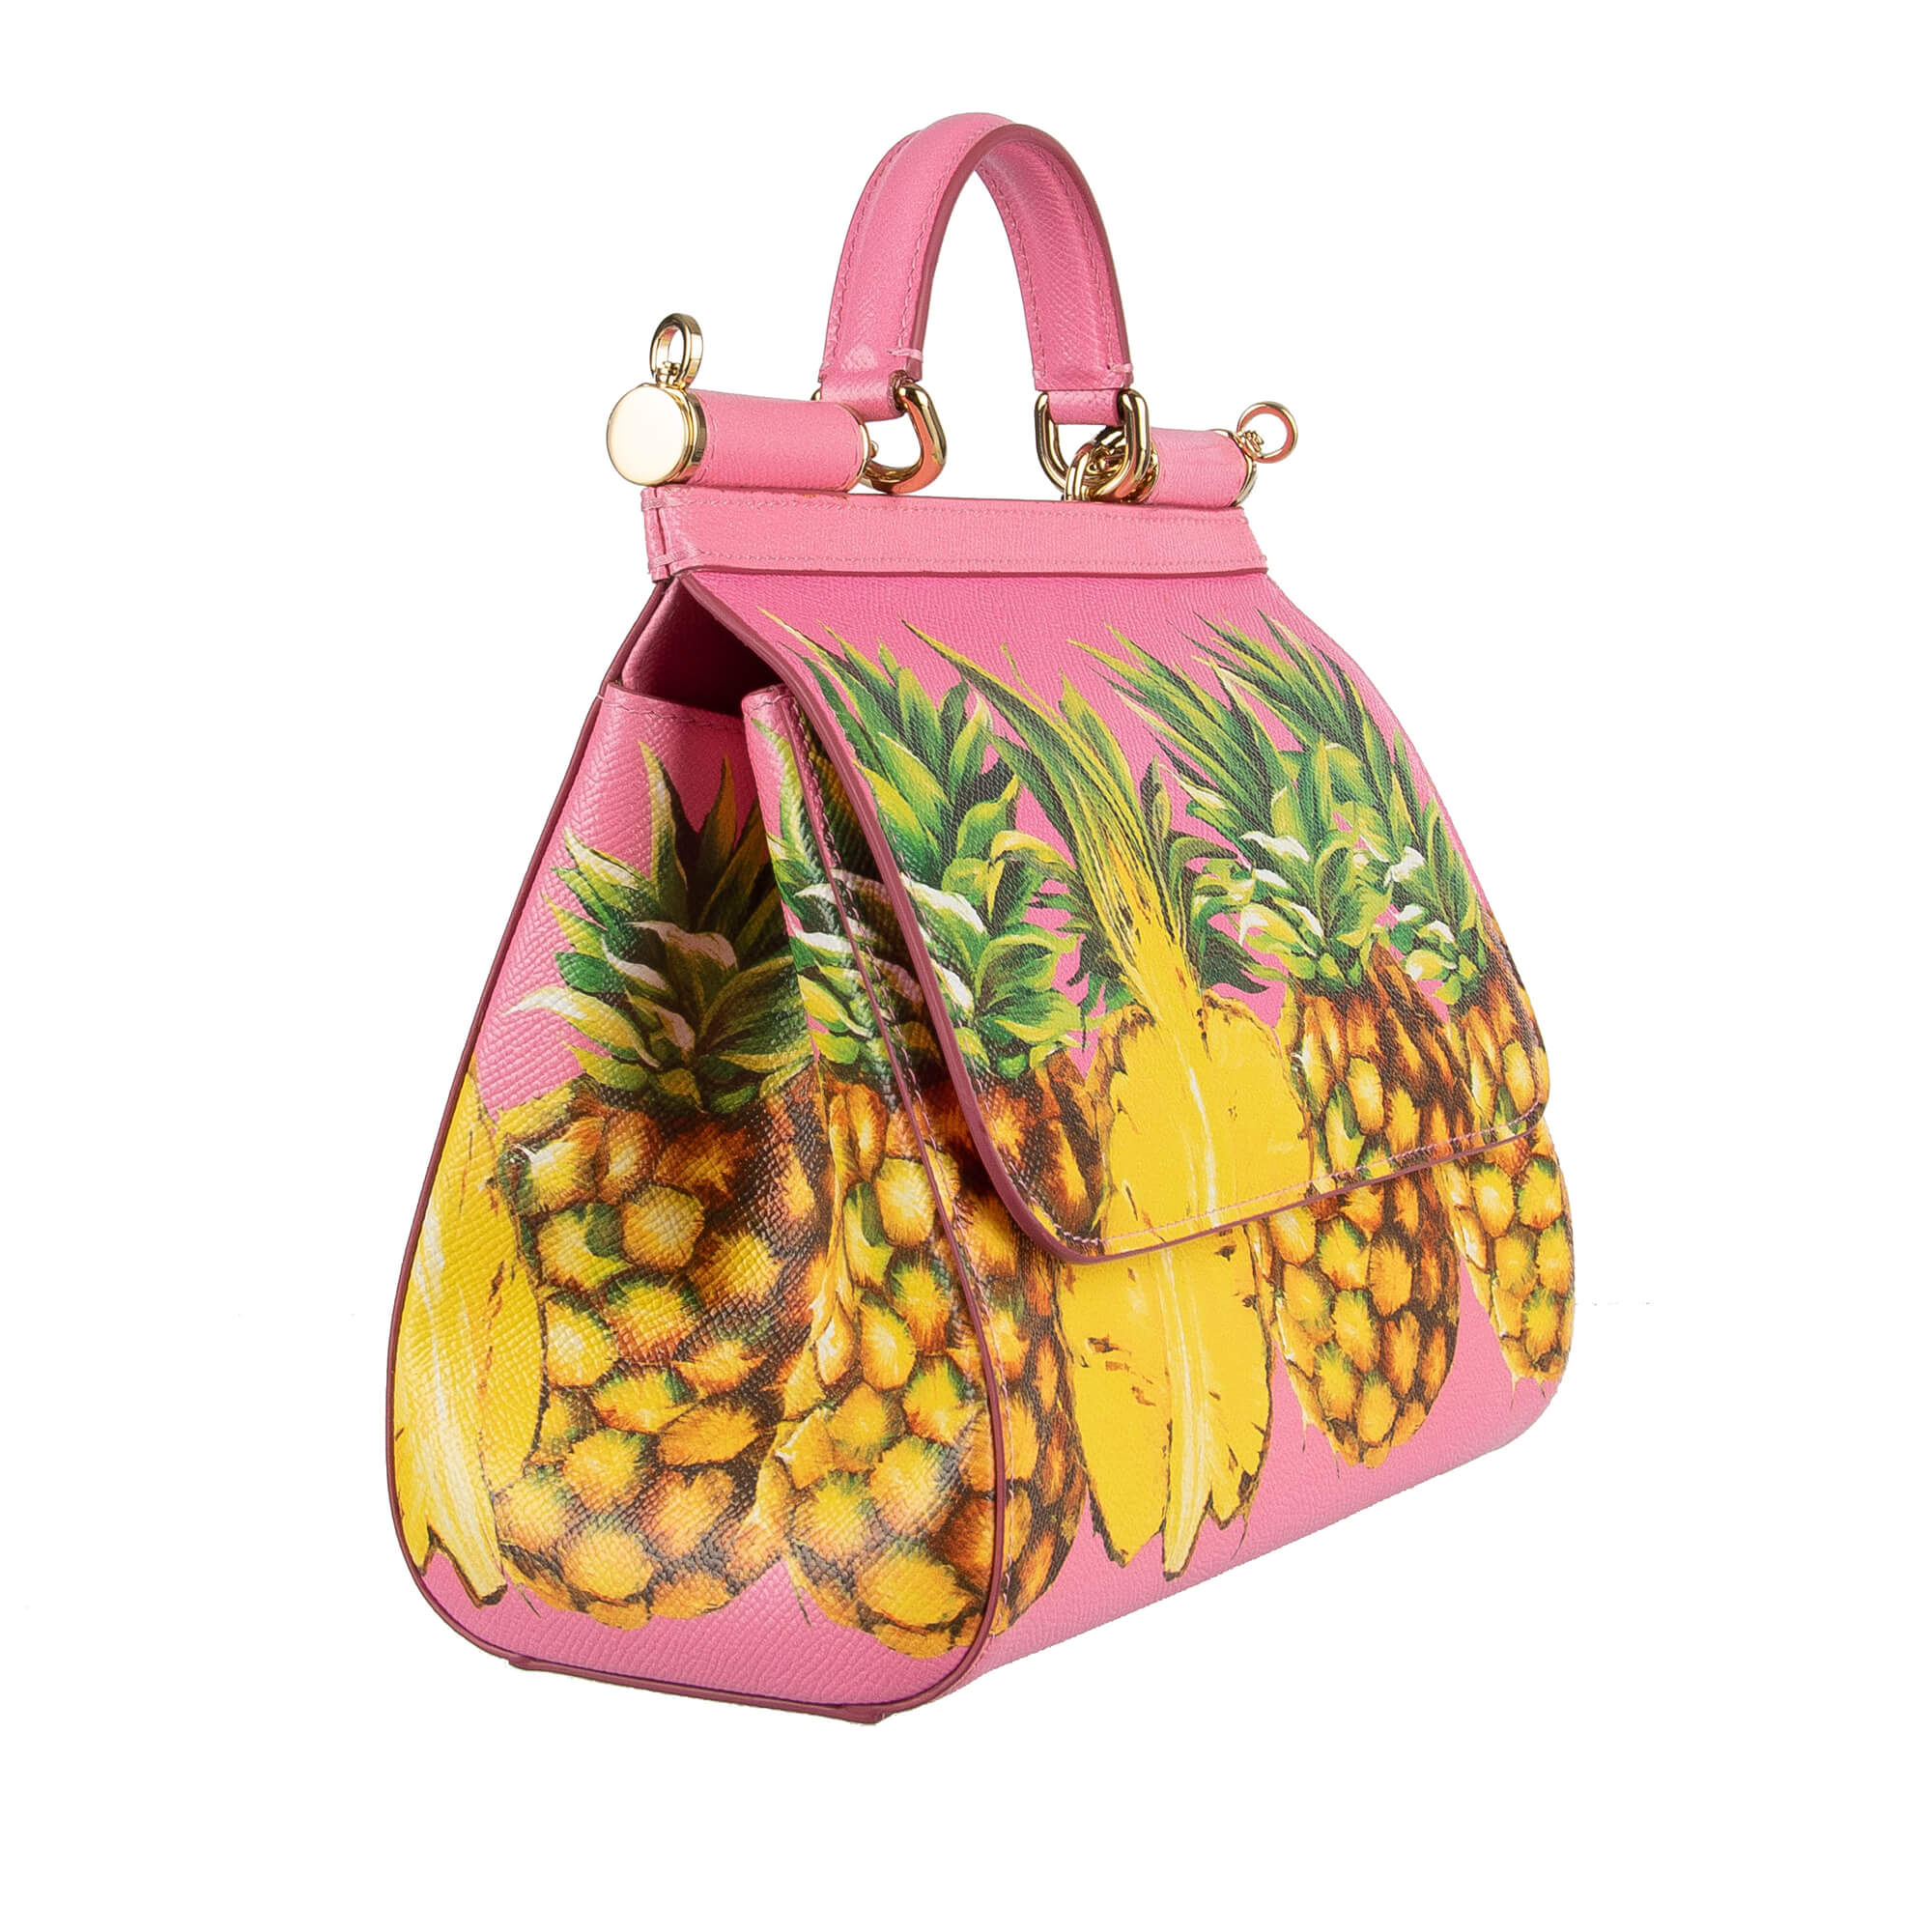 dolce gabbana pineapple